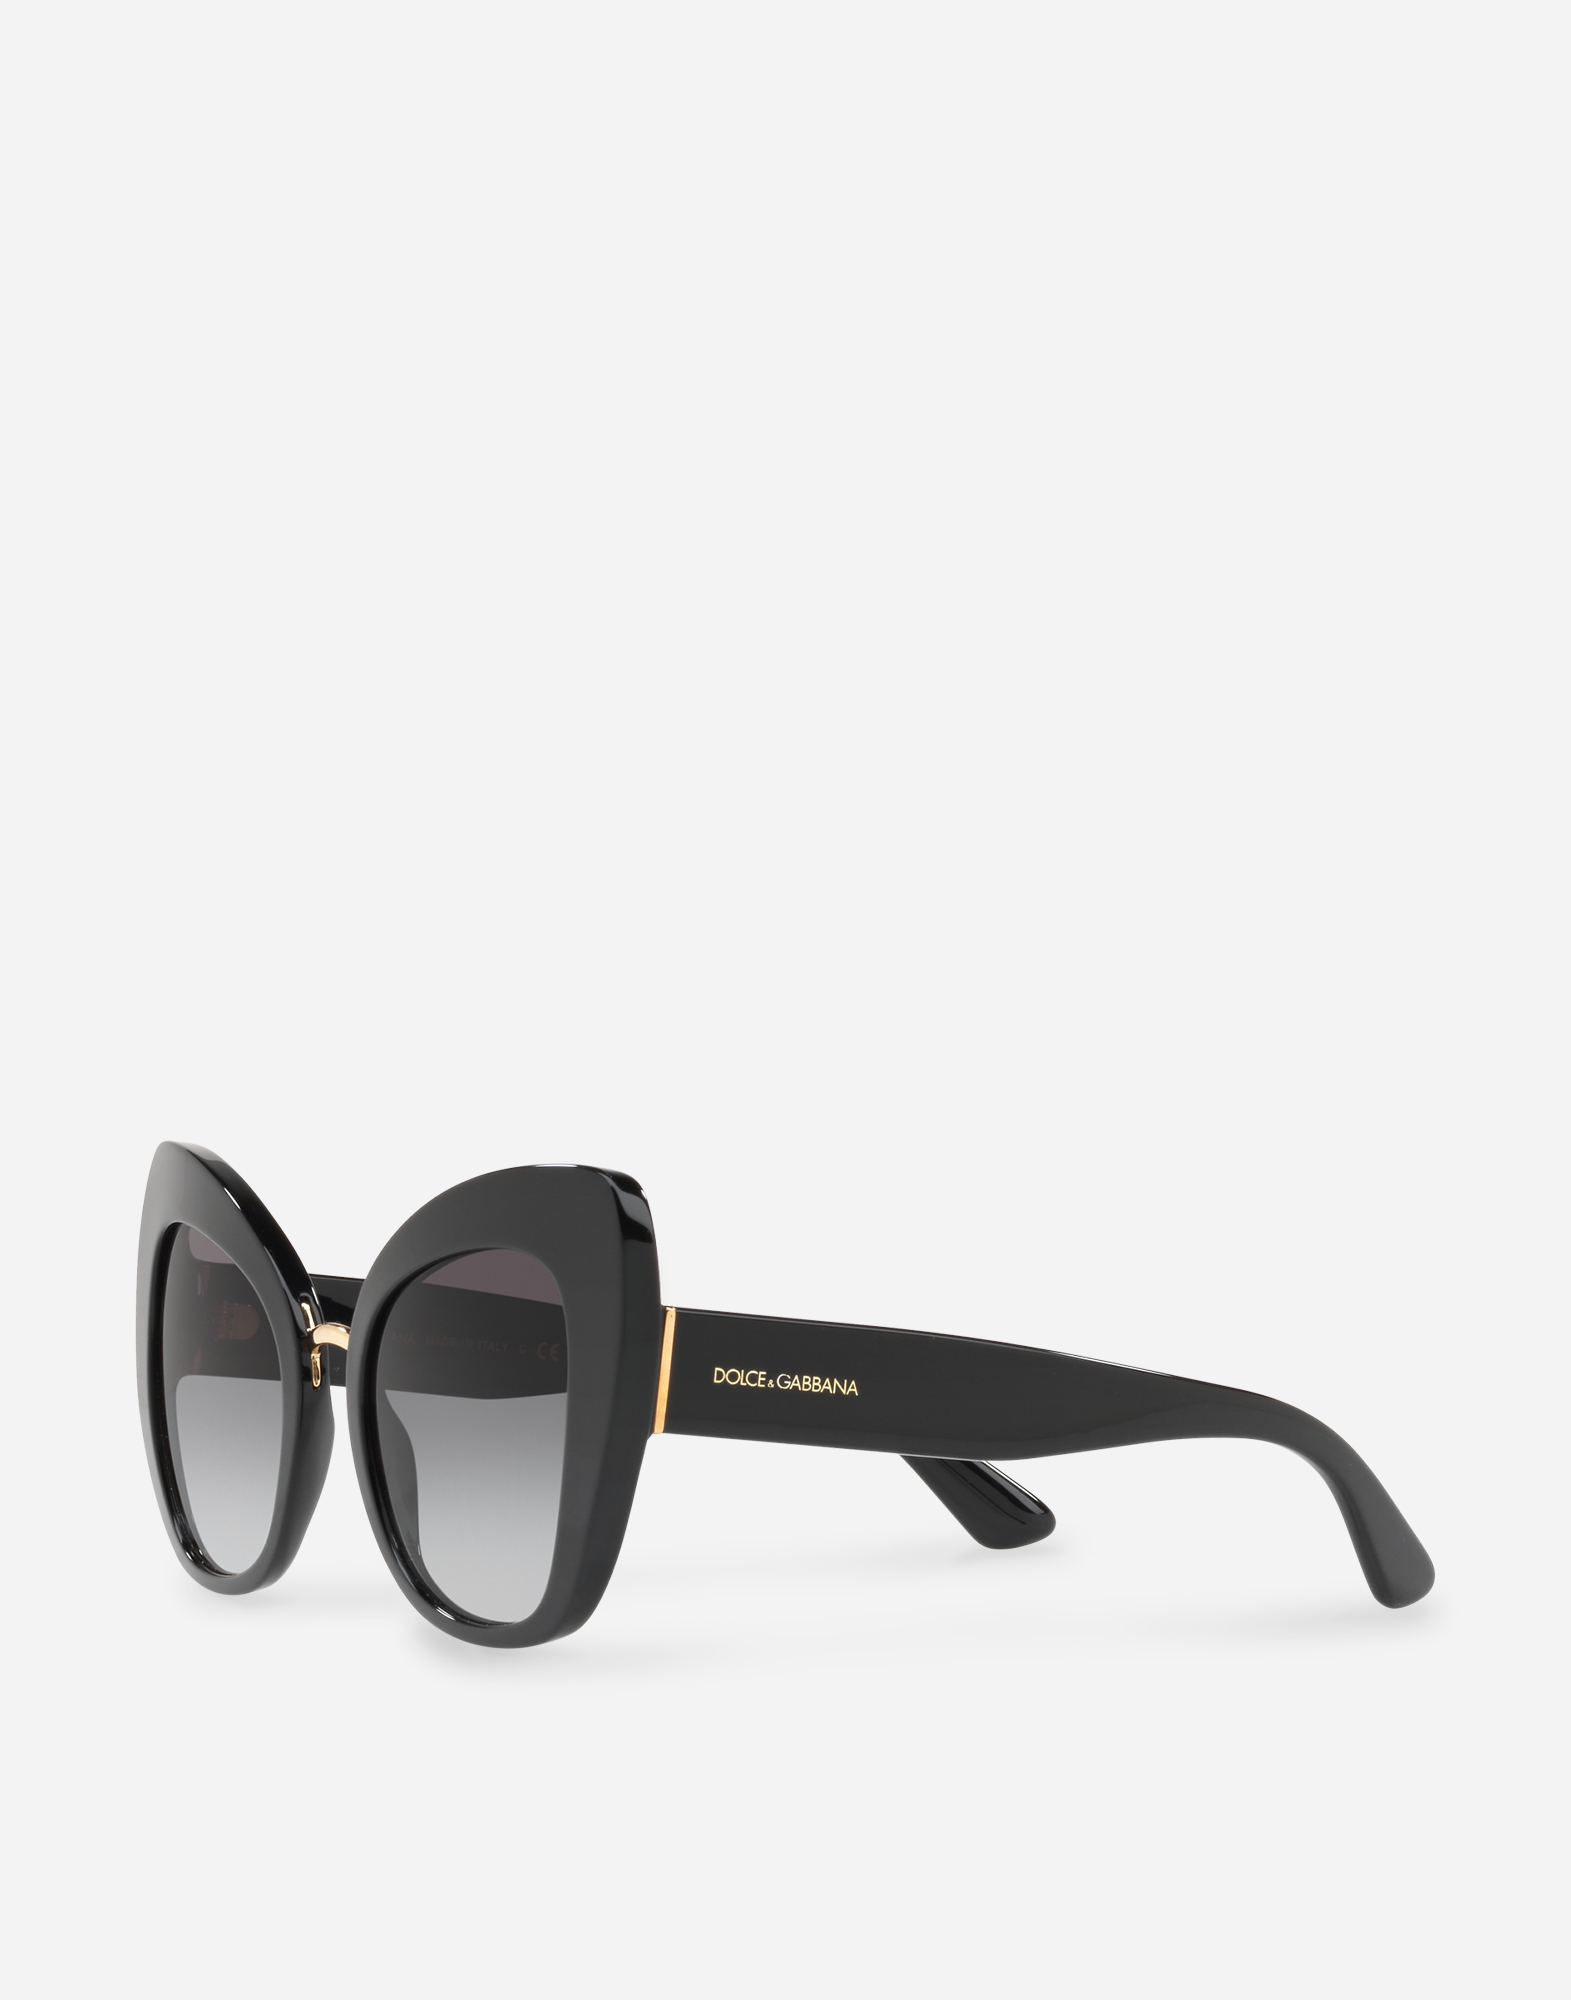 Солнцезащитные очки dolce. Dolce Gabbana солнцезащитные очки dg4170p. Солнечные очки Дольче Габбана. Очки солнцезащитные Дольче Dolce Gabbana. Очки Дольче Габбана женские.